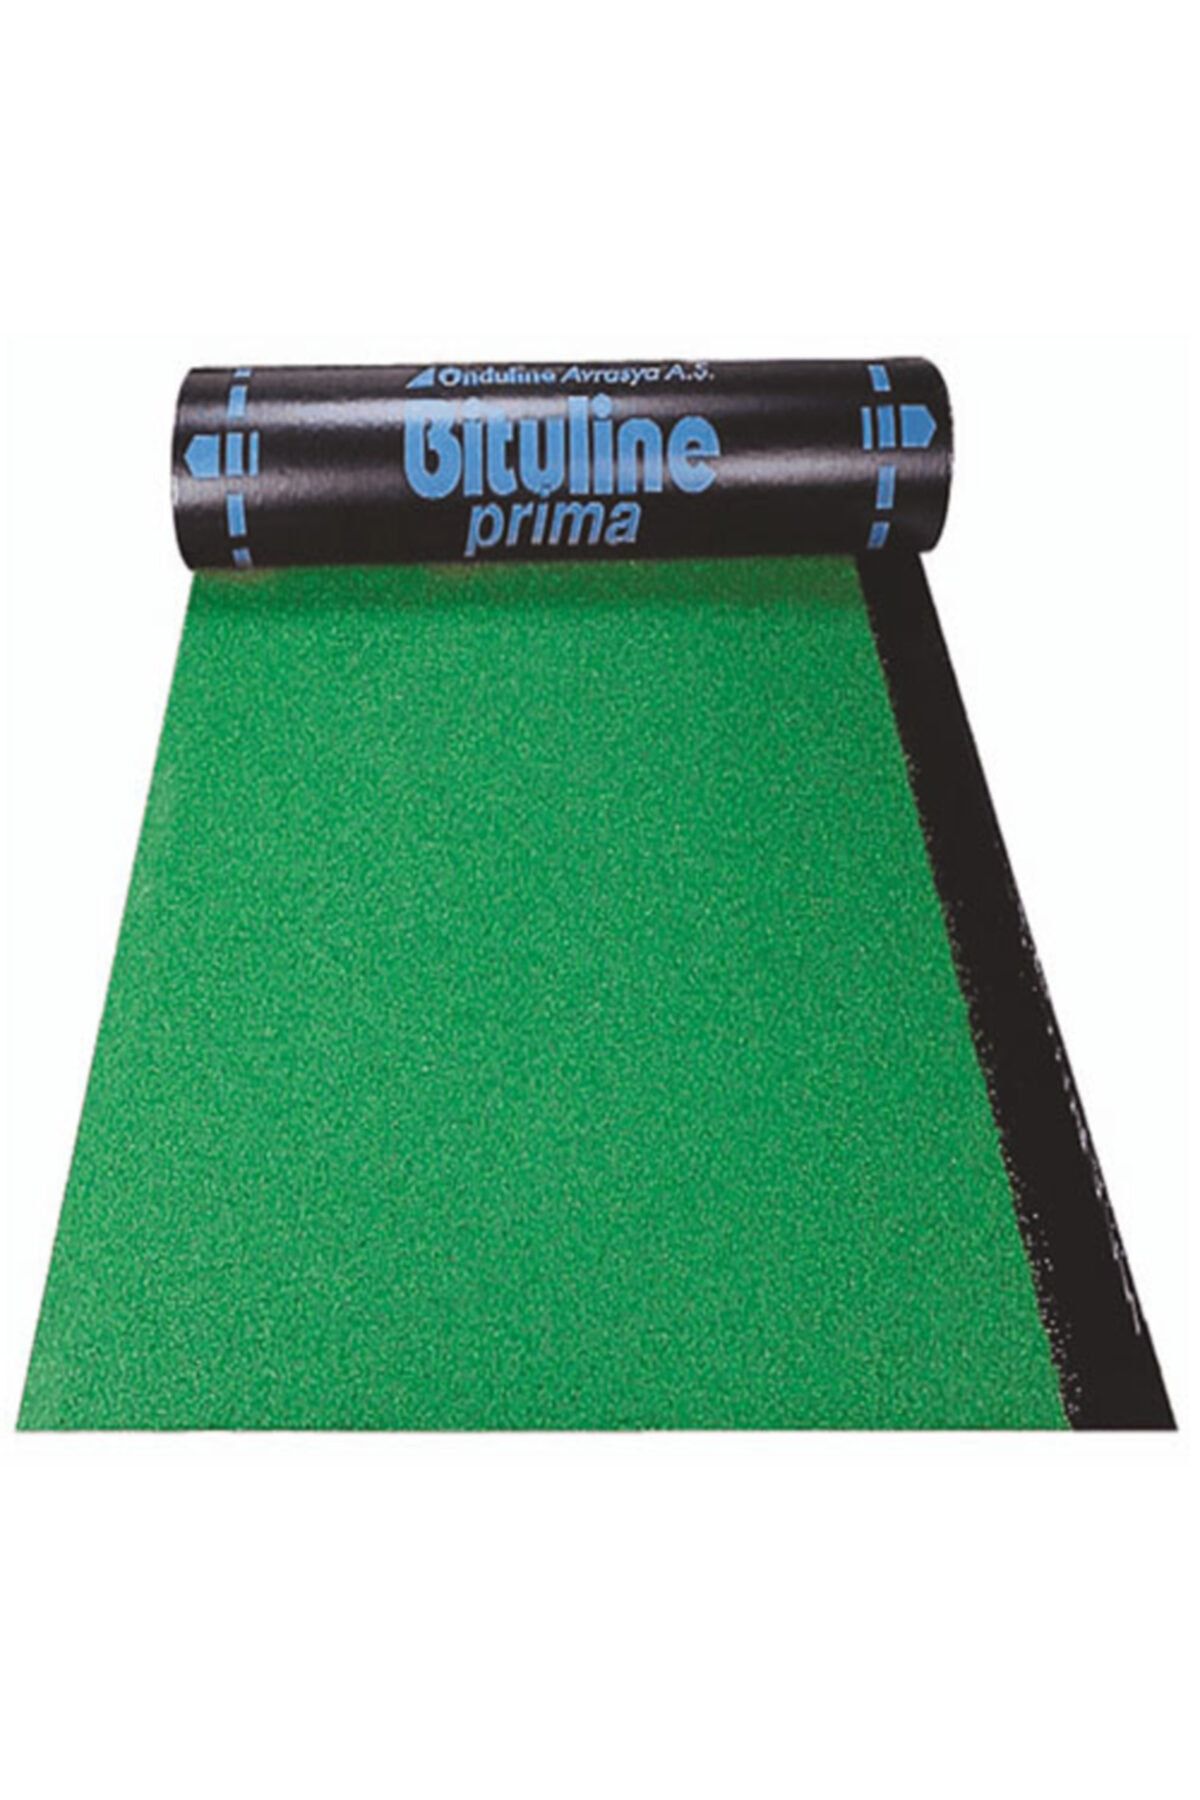 Onduline - Bituline Pp40k Yeşil Arduazlı Kumlu Bitüm Esaslı Çatı Su Yalıtım Membranı 4mm